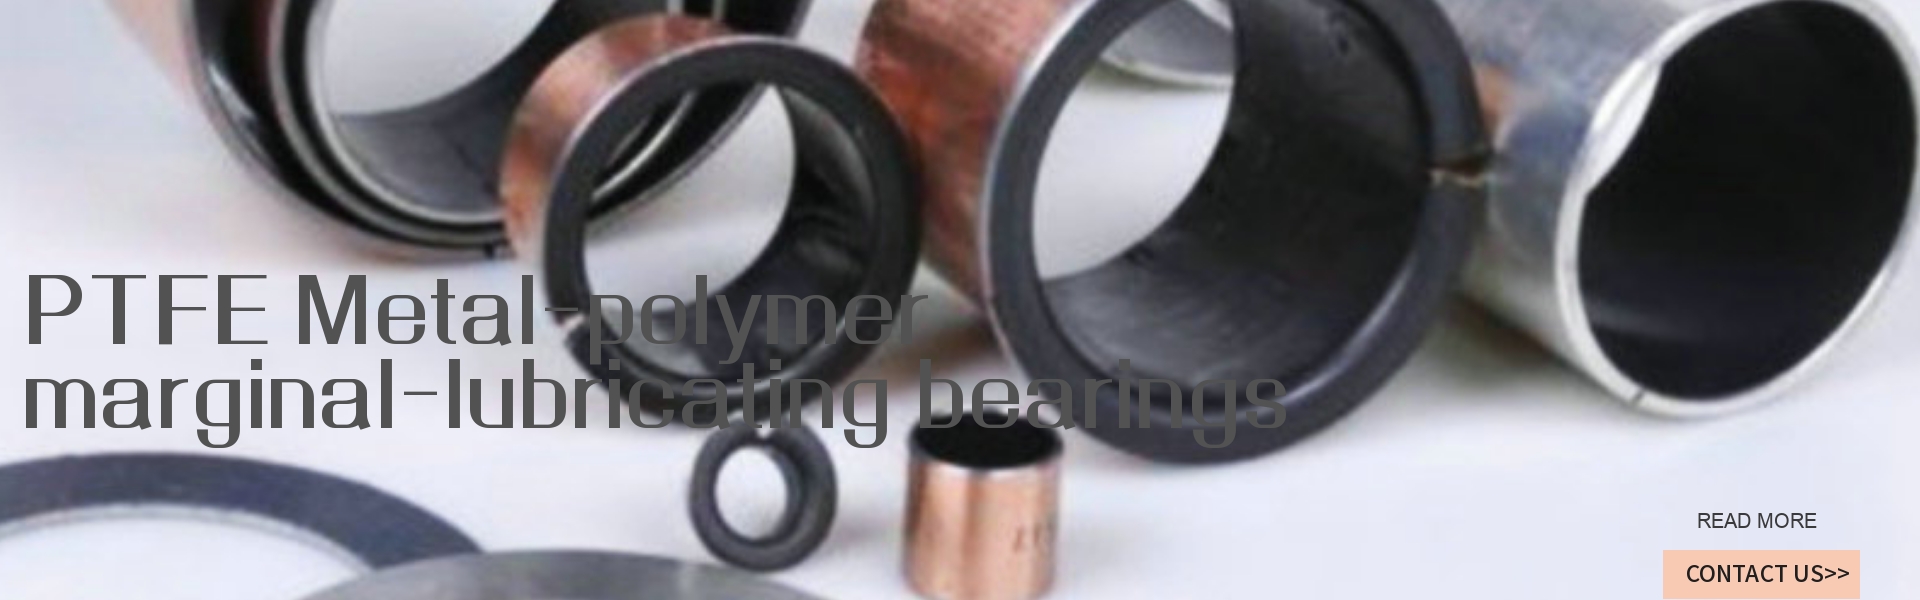 PTFE Metal-polymer marginal-lubricating bearings